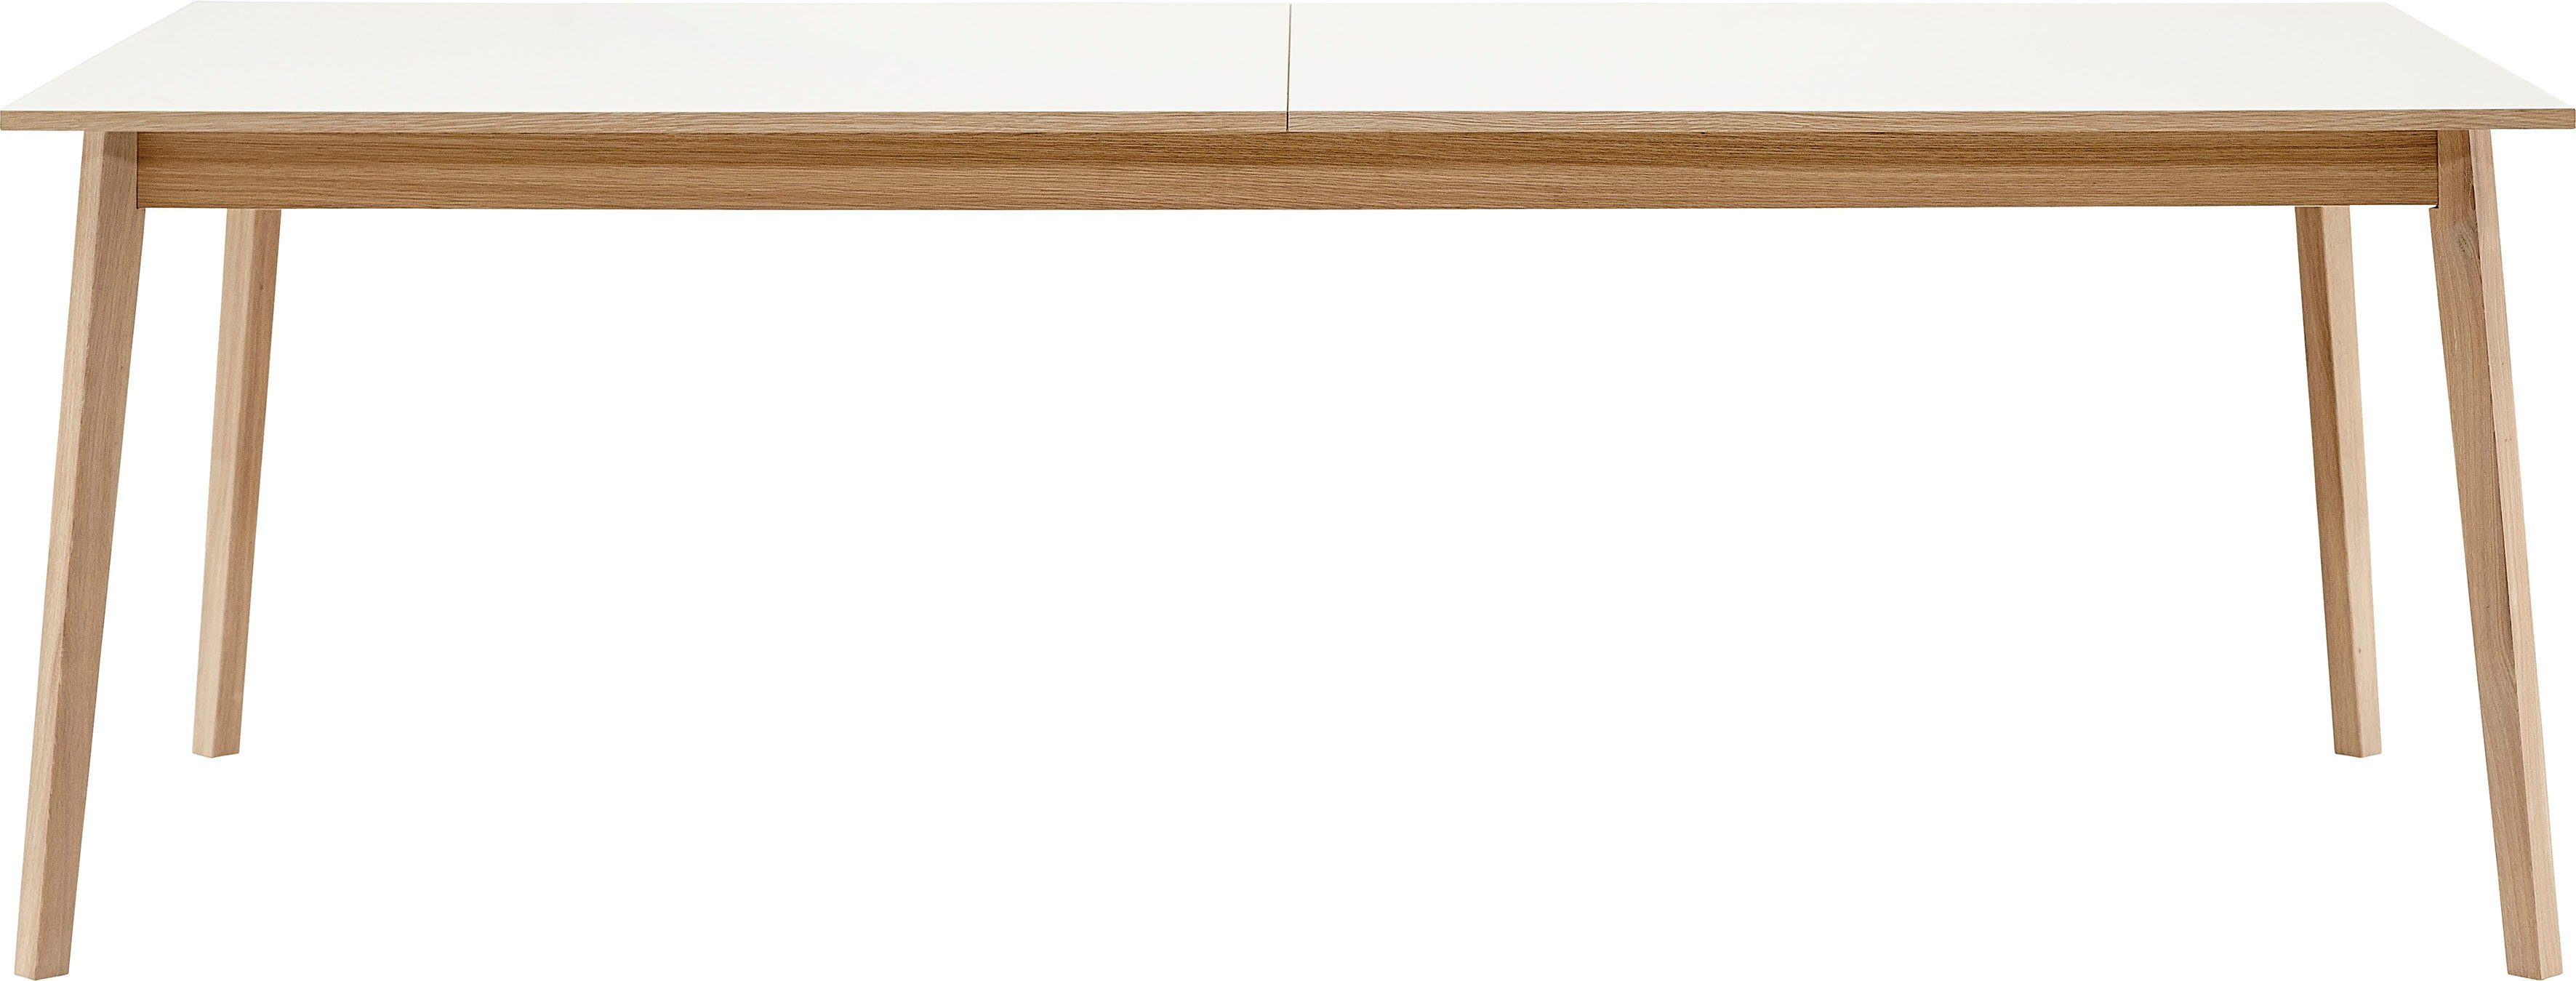 220(310)x100 Furniture Melamin Tischplatte cm, in Hammel Gestell Eiche und Basic Hammel by Avion, Esstisch aus